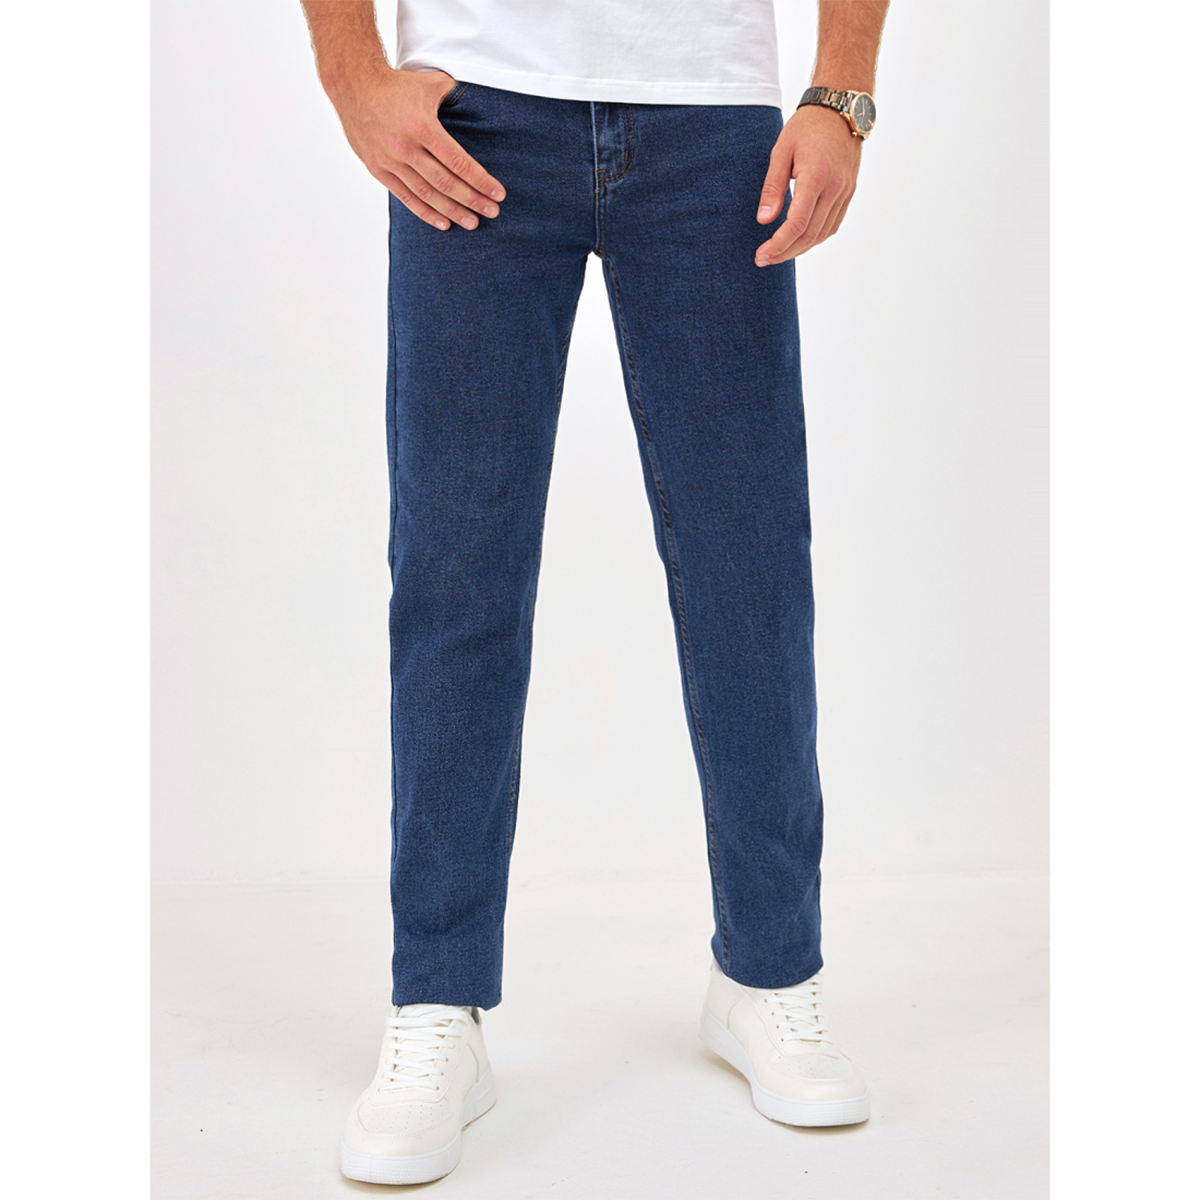 Джинсы мужские Barouz Jeans classic синие 46